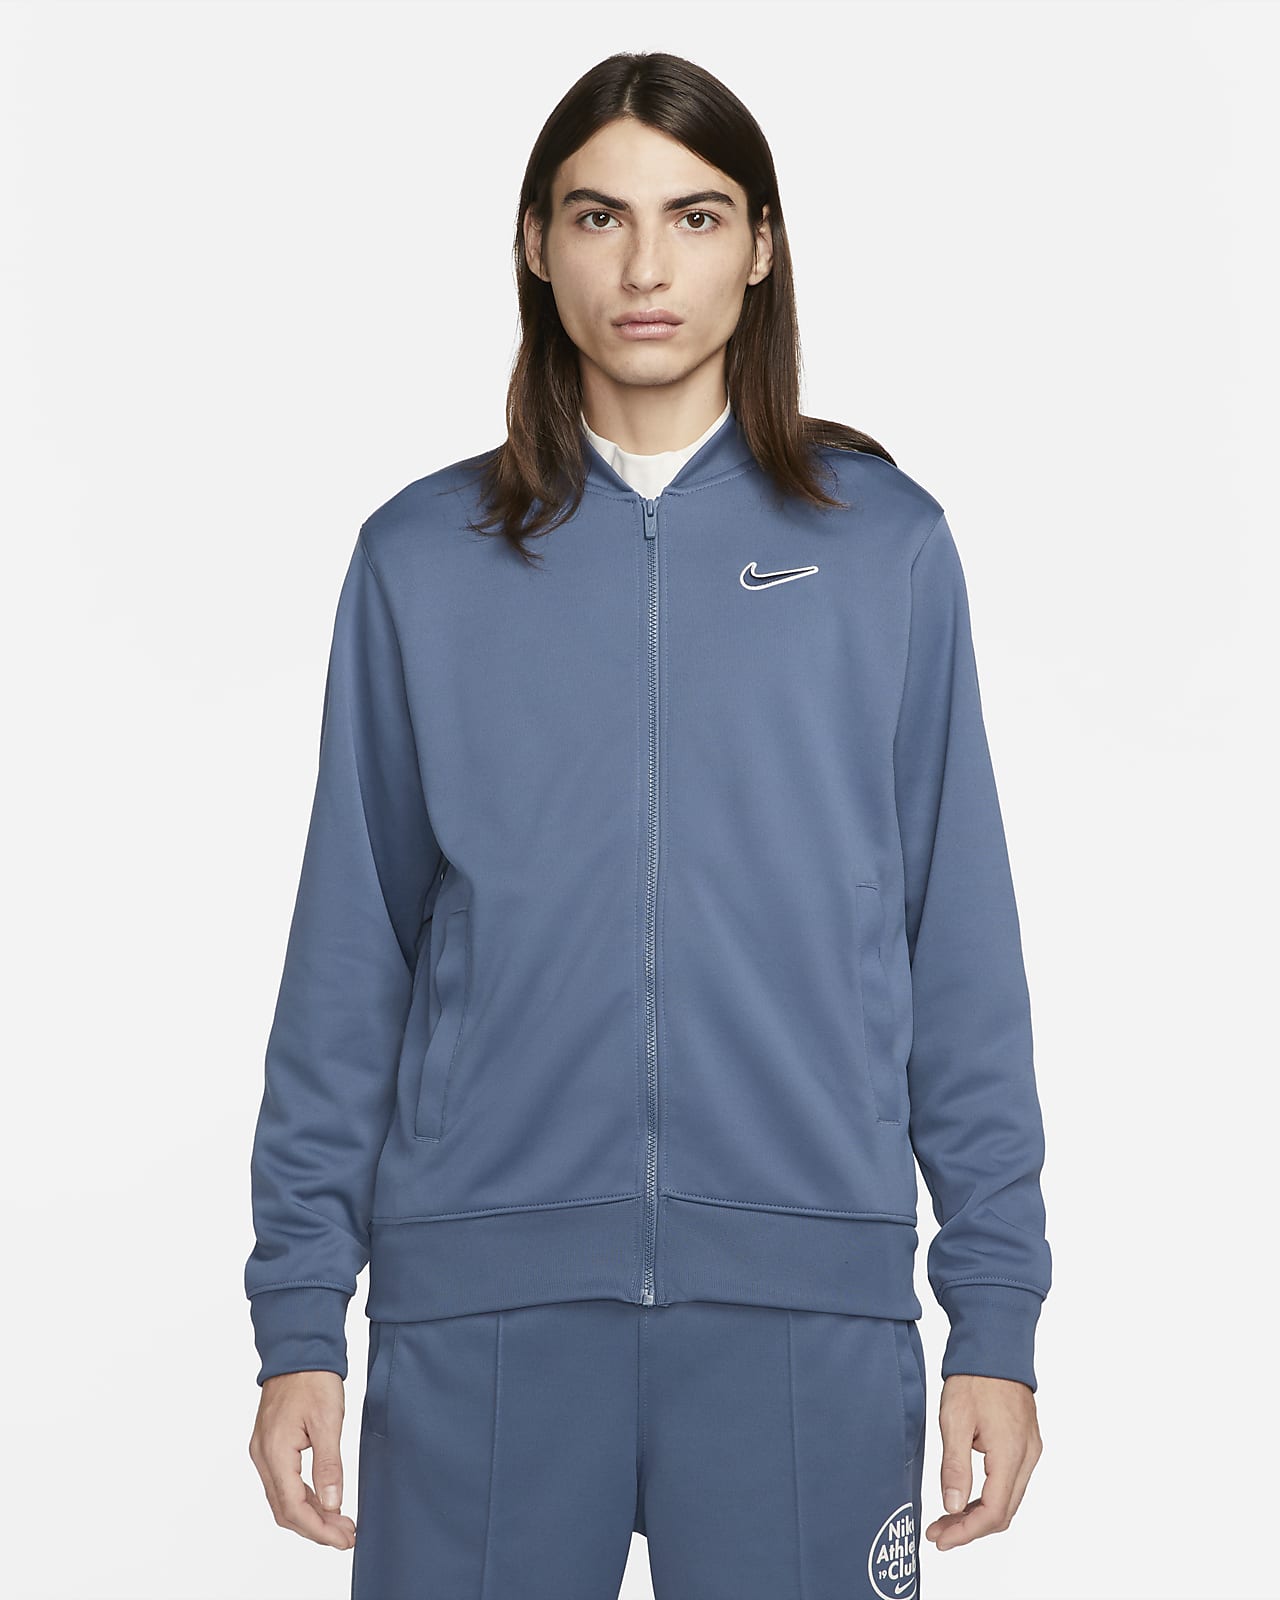 Bomberjacka Nike Sportswear för män